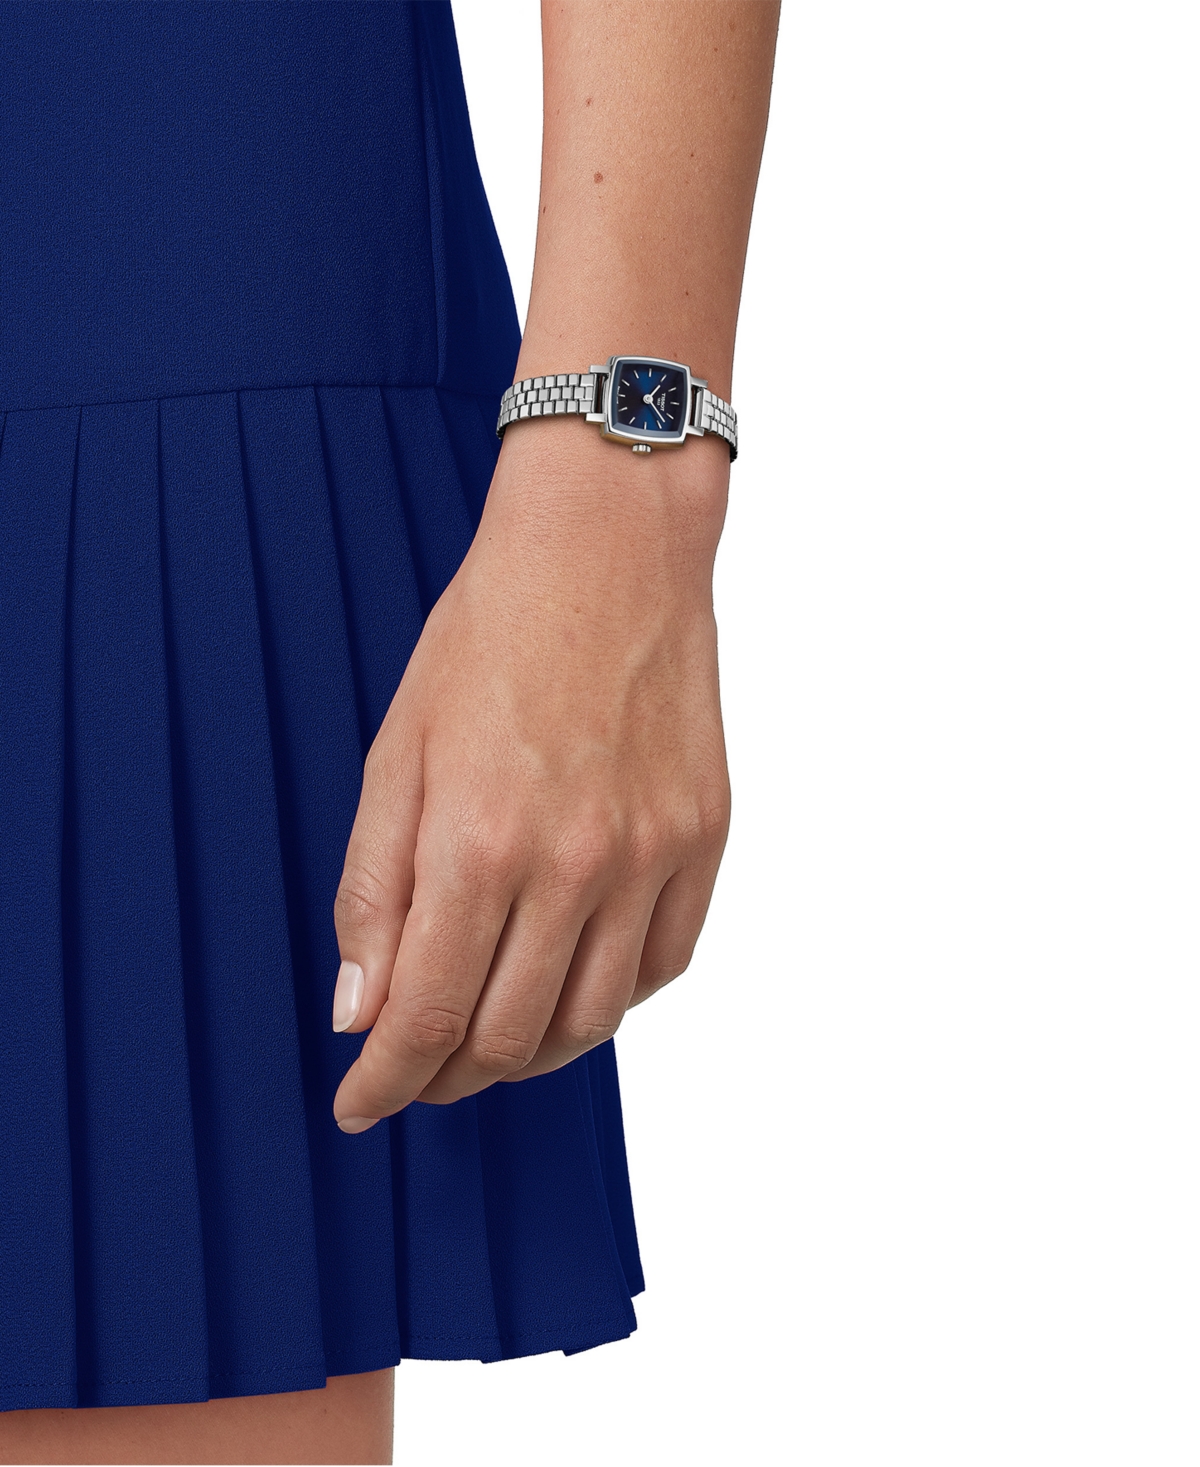 Shop Tissot Women's Swiss Lovely Square Stainless Steel Bracelet Watch 20mm In Grey